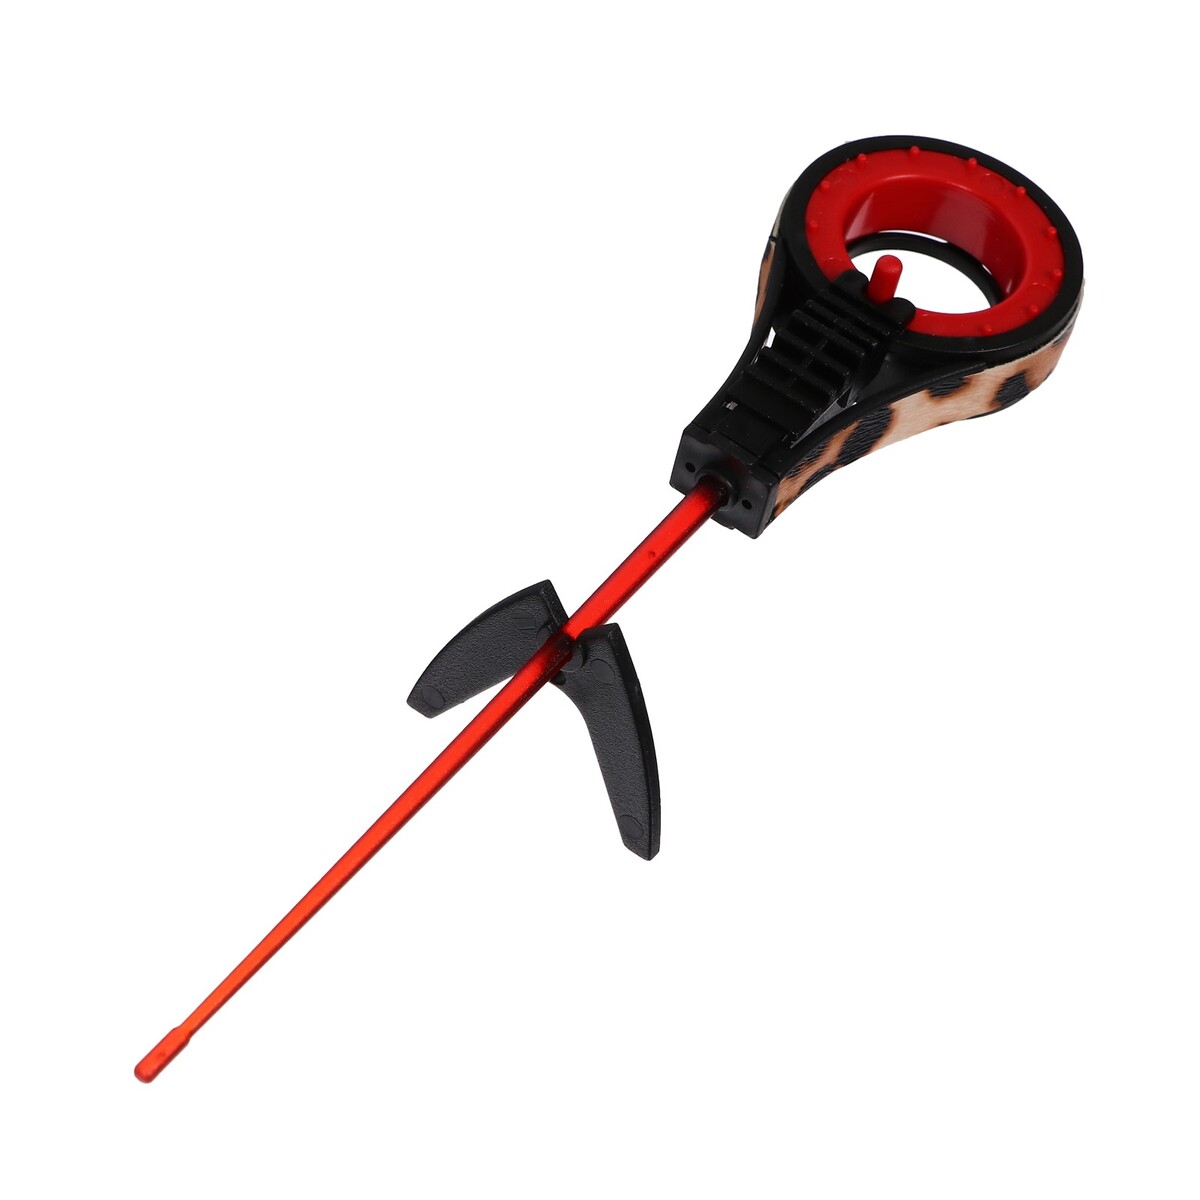 Удочка зимняя балалайка со сторожком, цвет черный красный, hfb-37 удочка зимняя ручка неопрен диаметр катушки 9 5 см hfb 1m